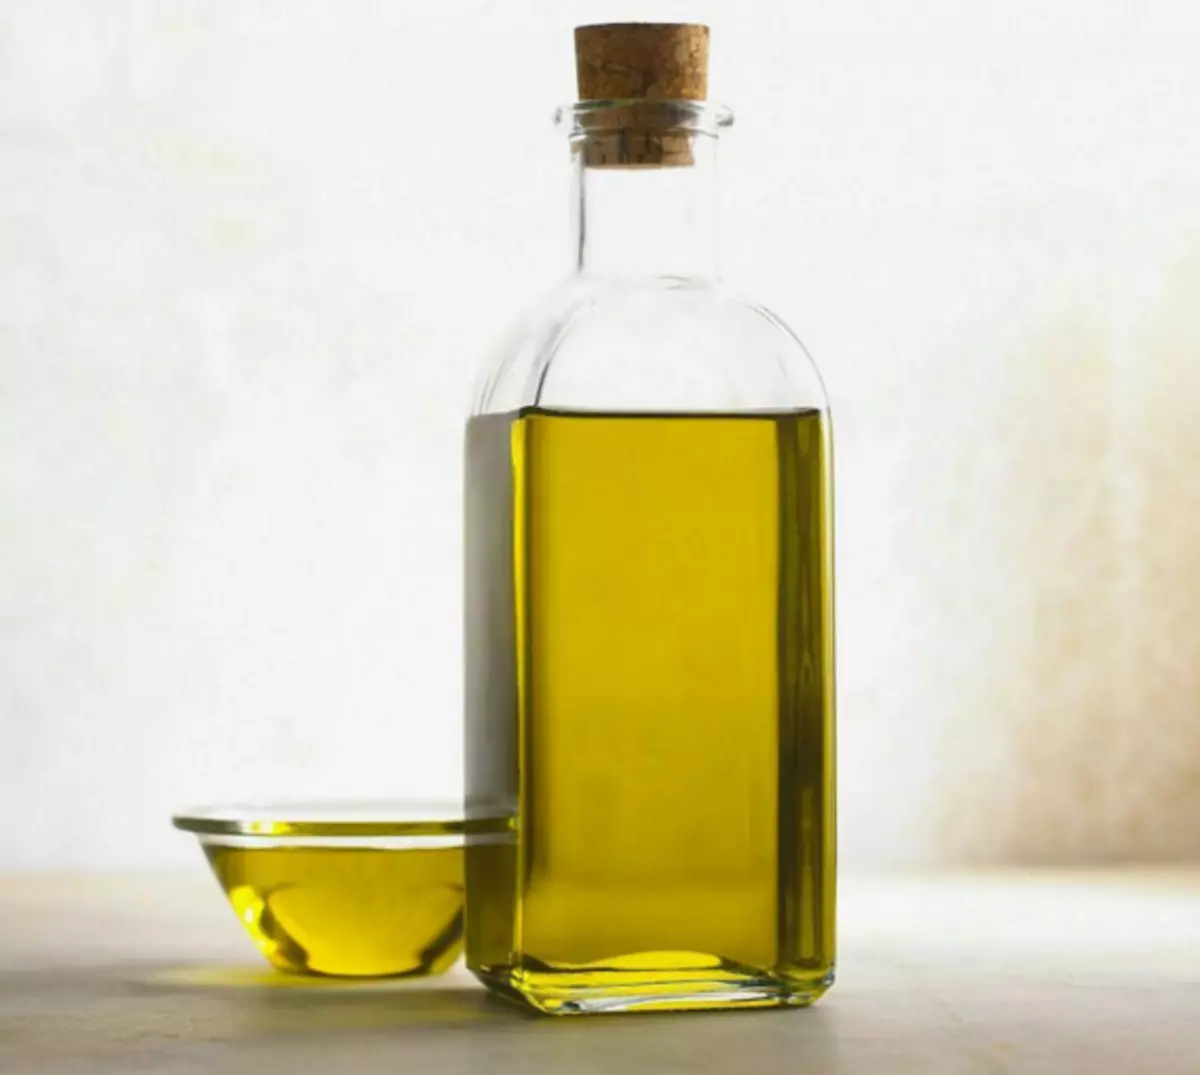 Les Italiens préféreront probablement l'huile de cheveux biologique qu'un baume d'usine